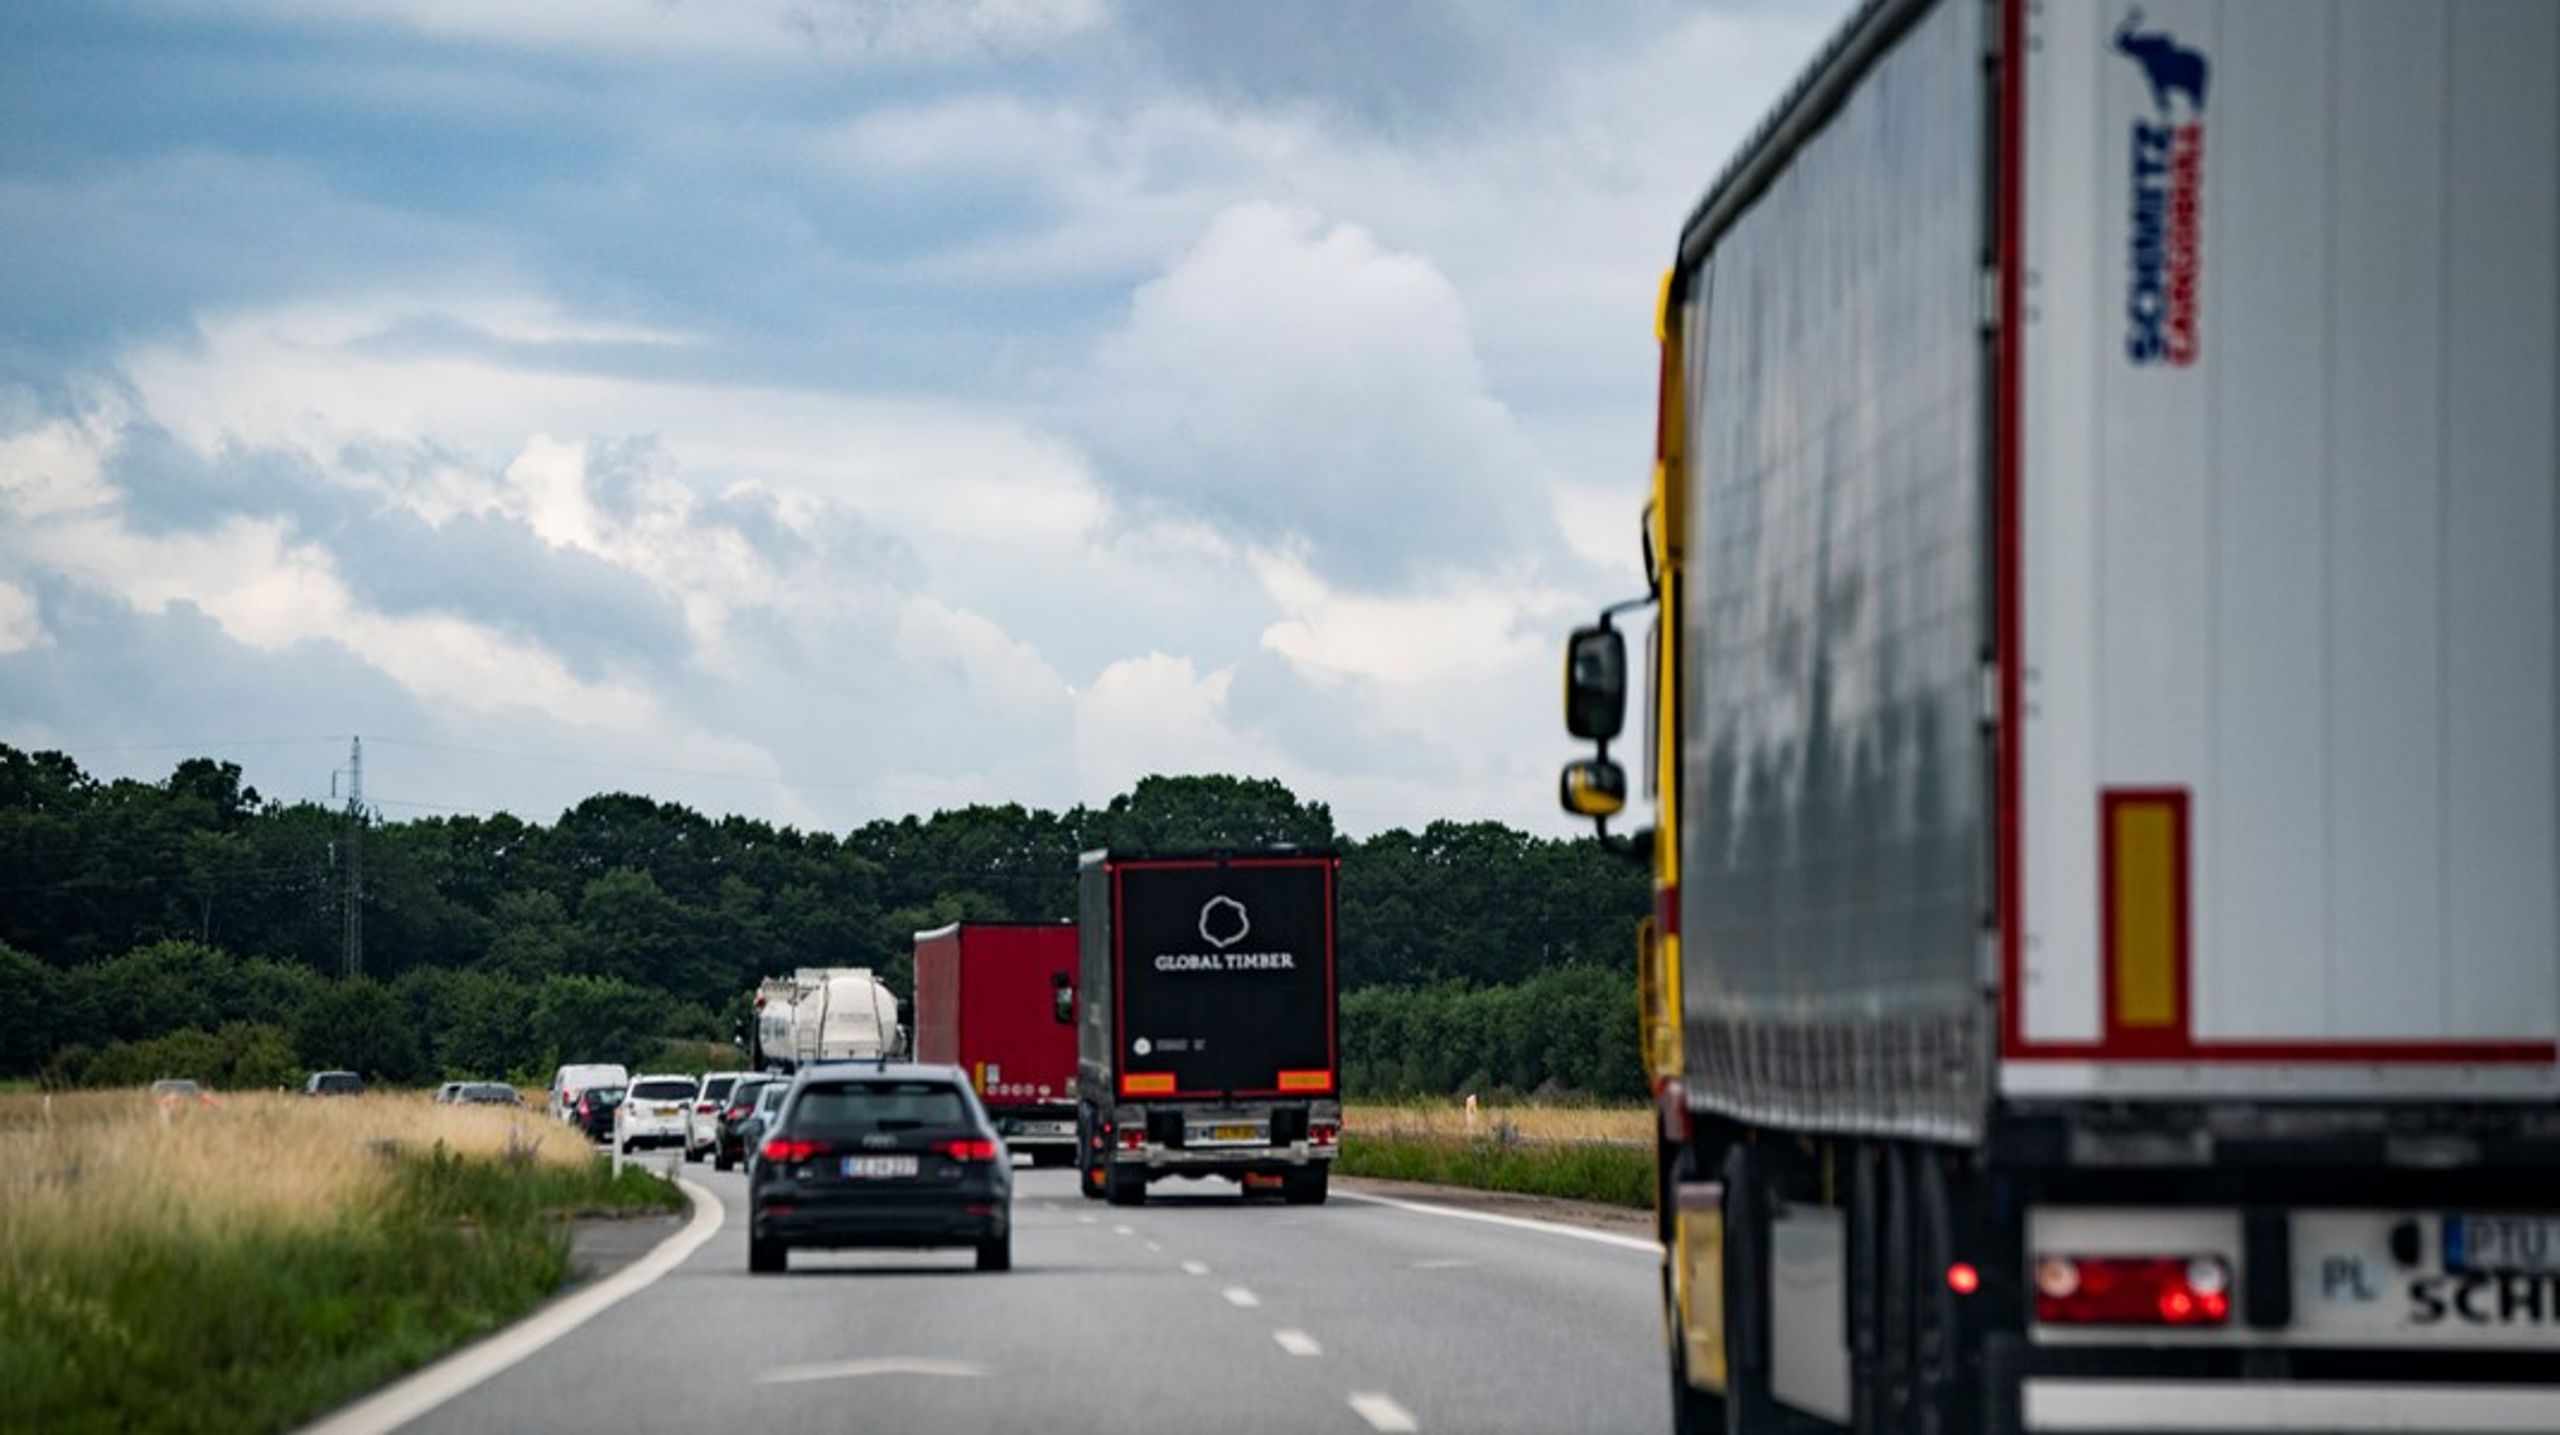 Hvis en motorvej mellem Næstved og Rønnede bliver anlagt med grøn asfalt, vil man over en tiårig periode kunne spare 184.000 tons CO2 fra trafikken, skriver Mads Elming.